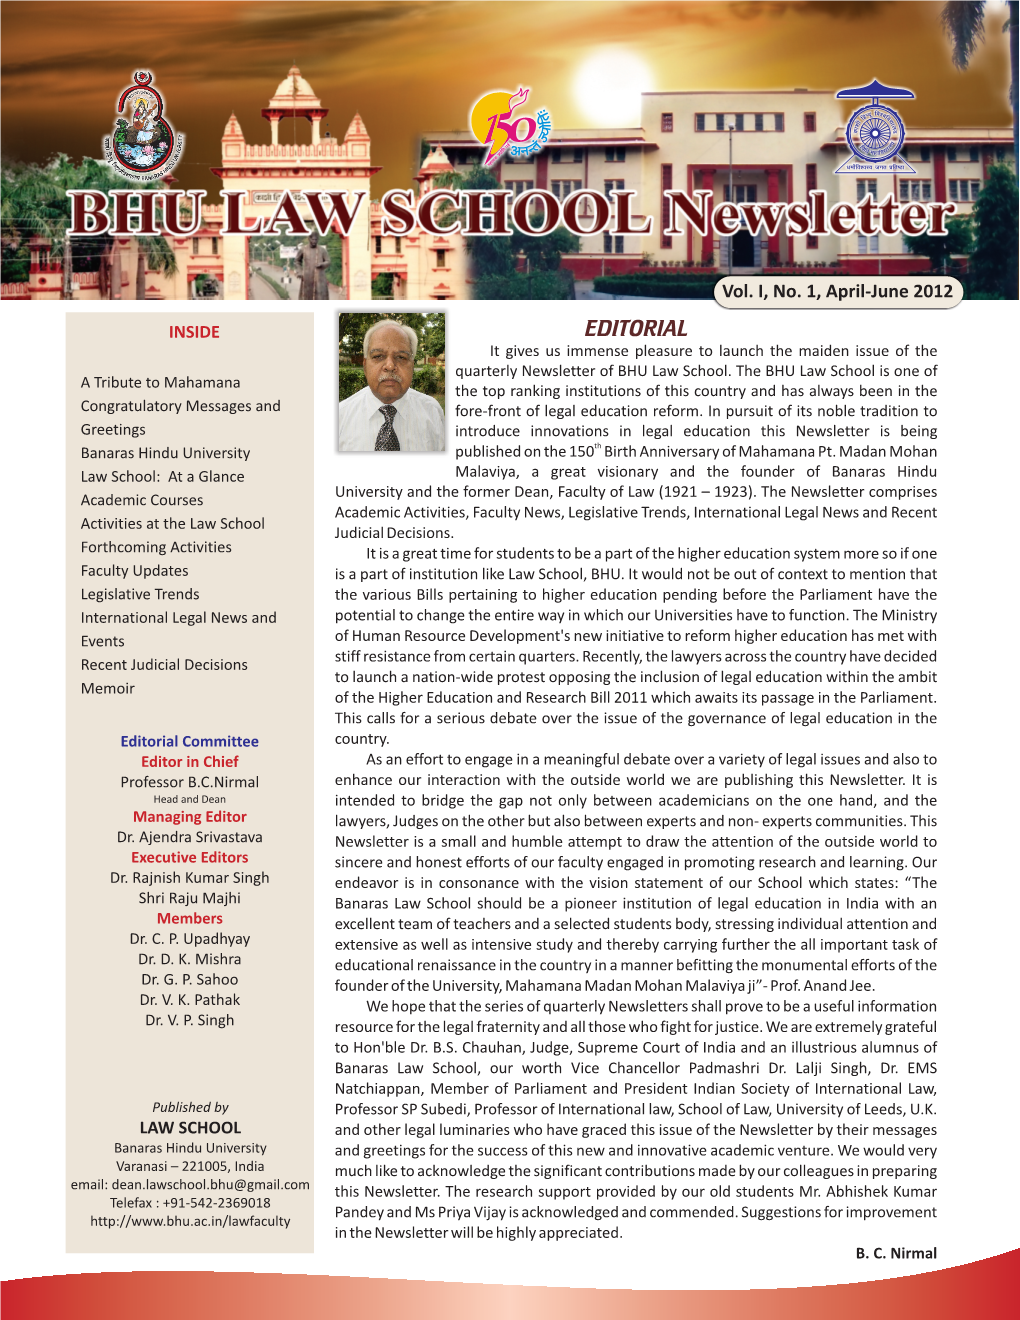 News Letter Vol.I, No.1, April-June 2012